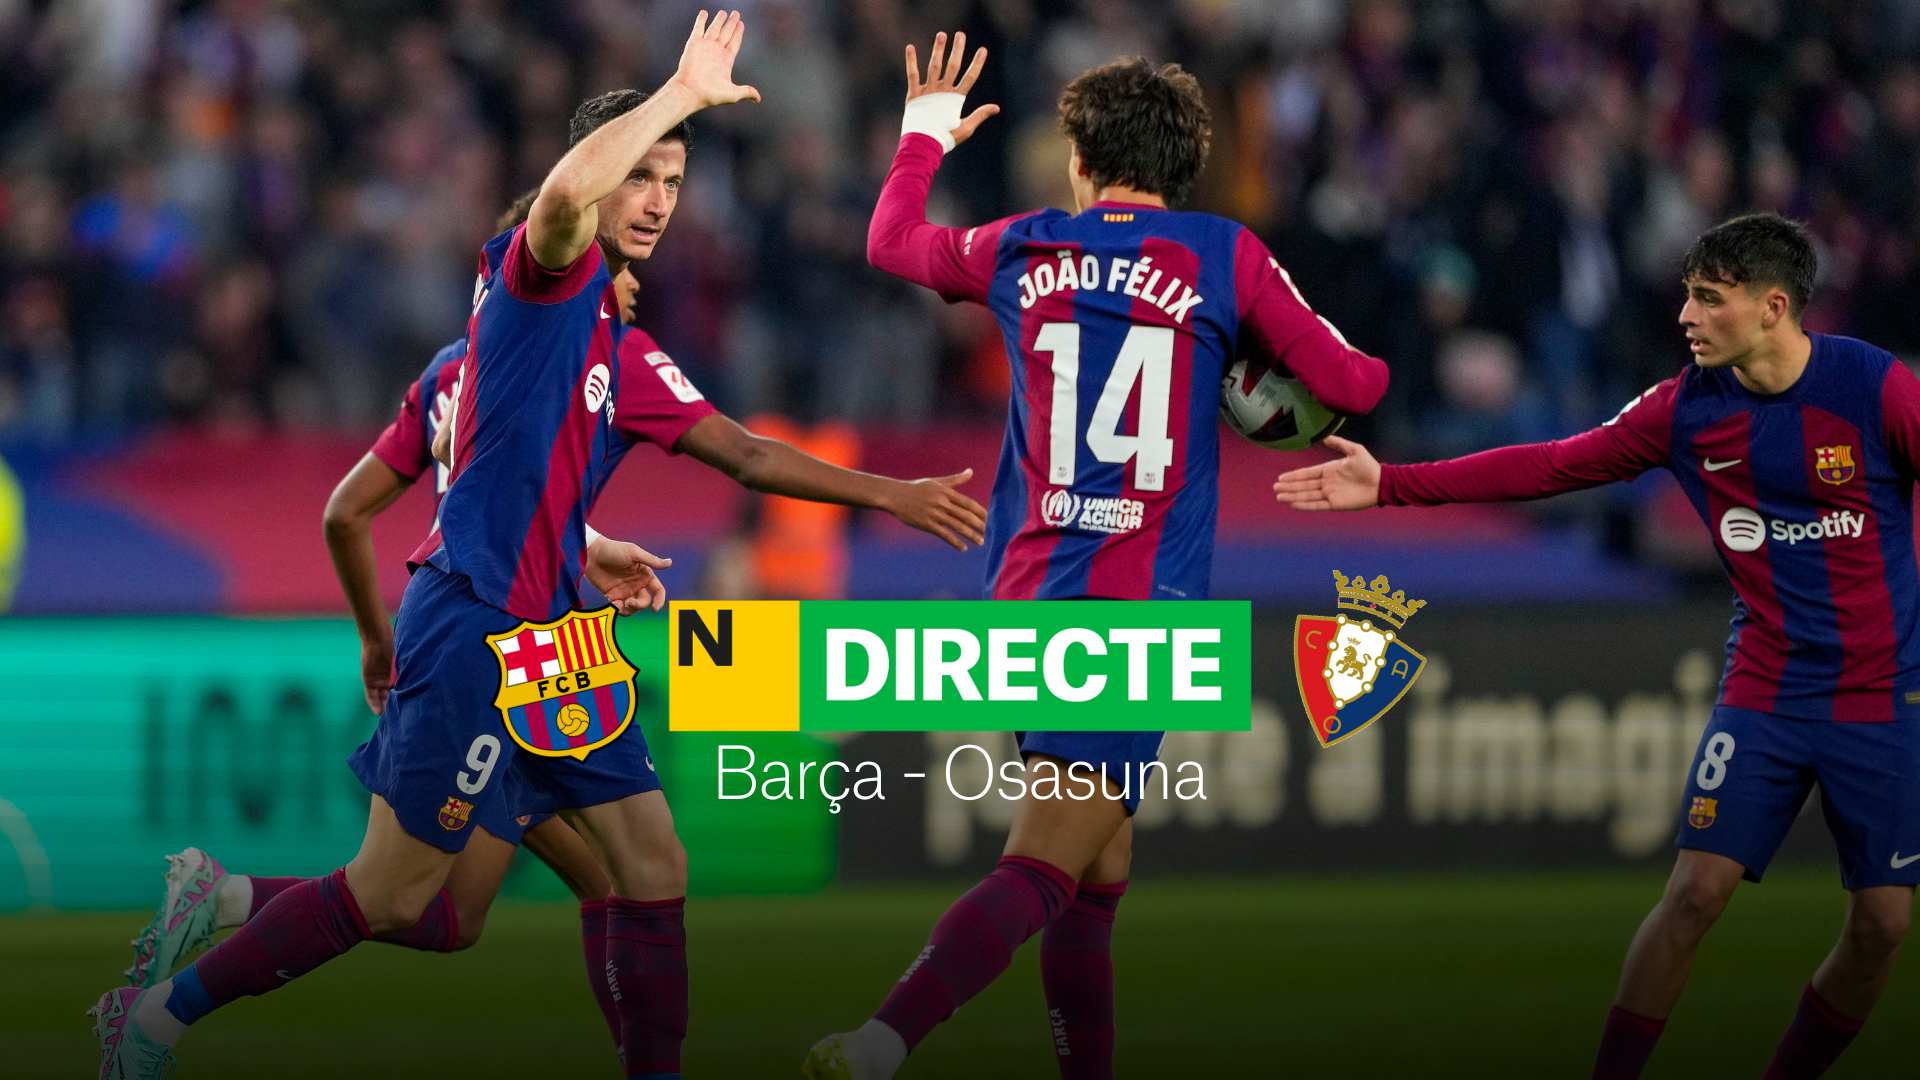 Barça - Osasuna de LaLiga EA Sports, DIRECTO | Resultado, resumen y goles